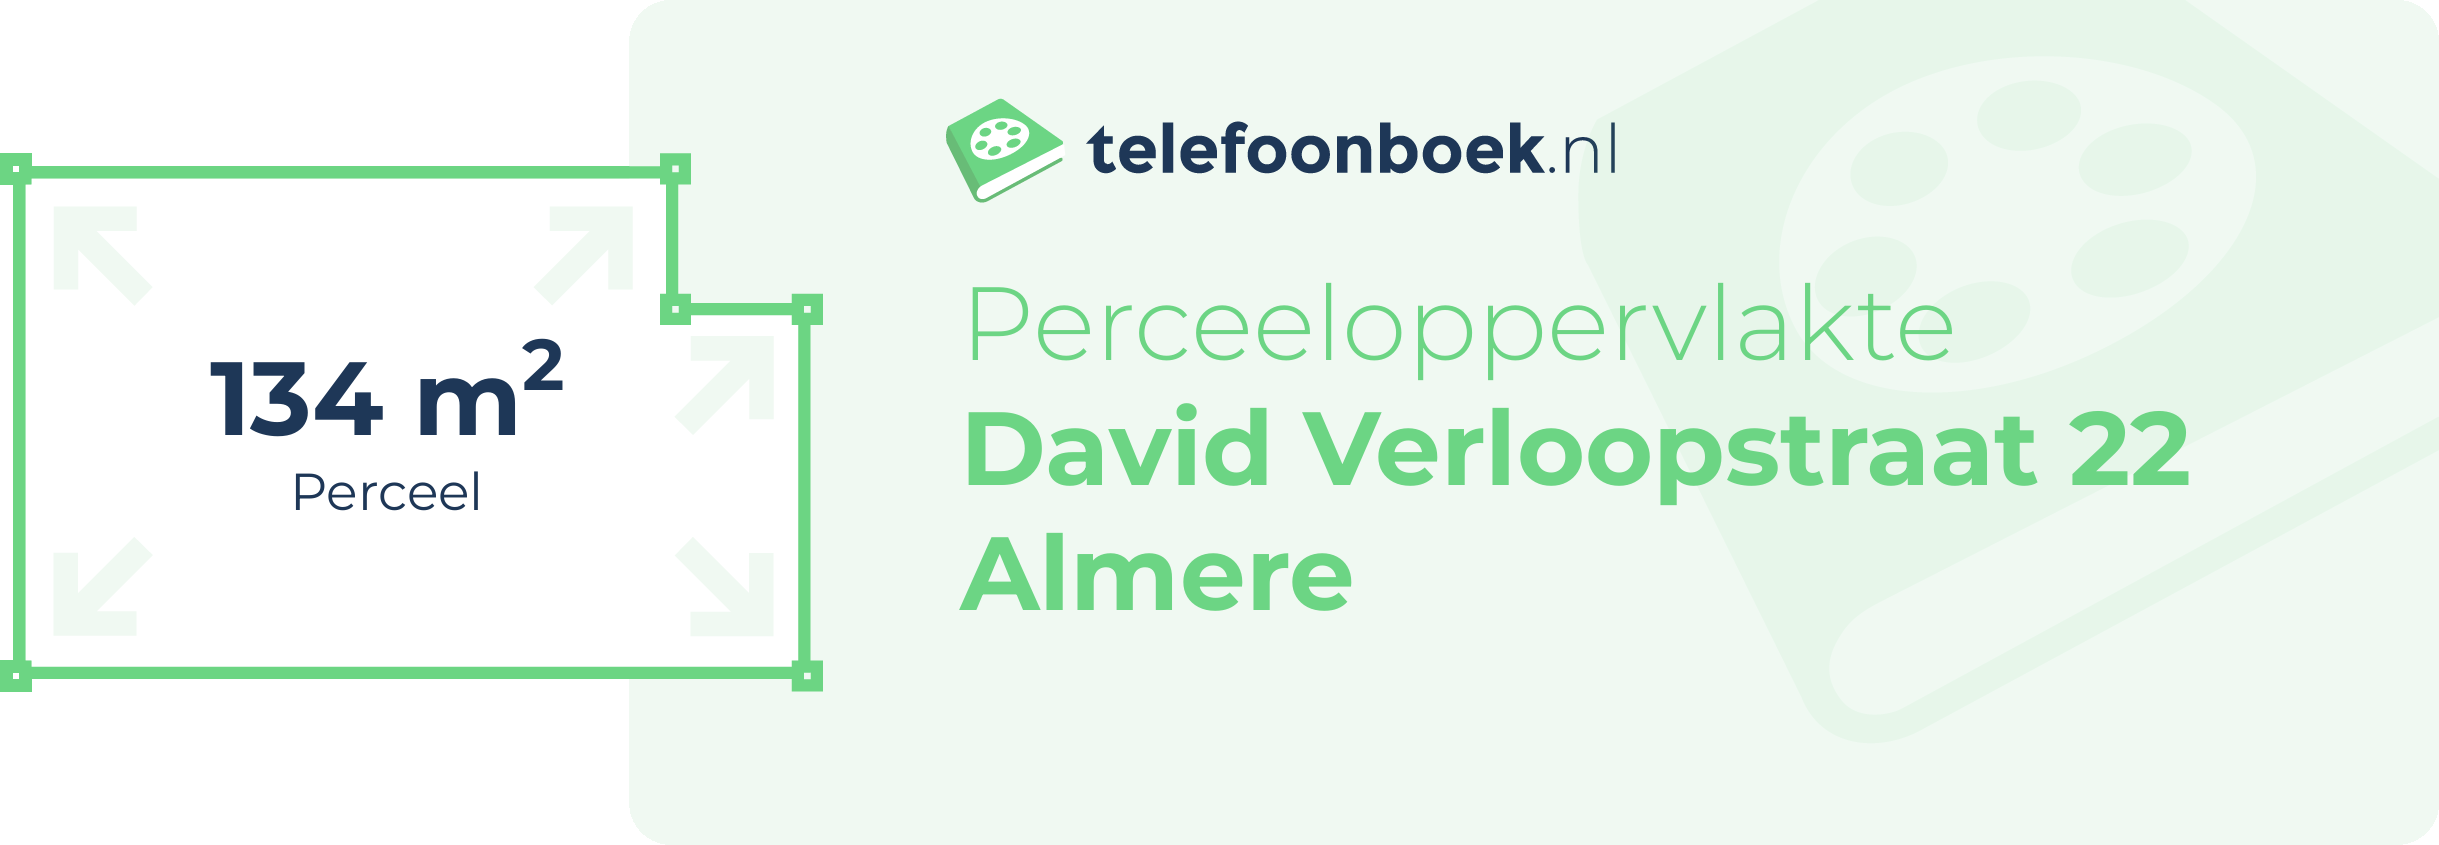 Perceeloppervlakte David Verloopstraat 22 Almere